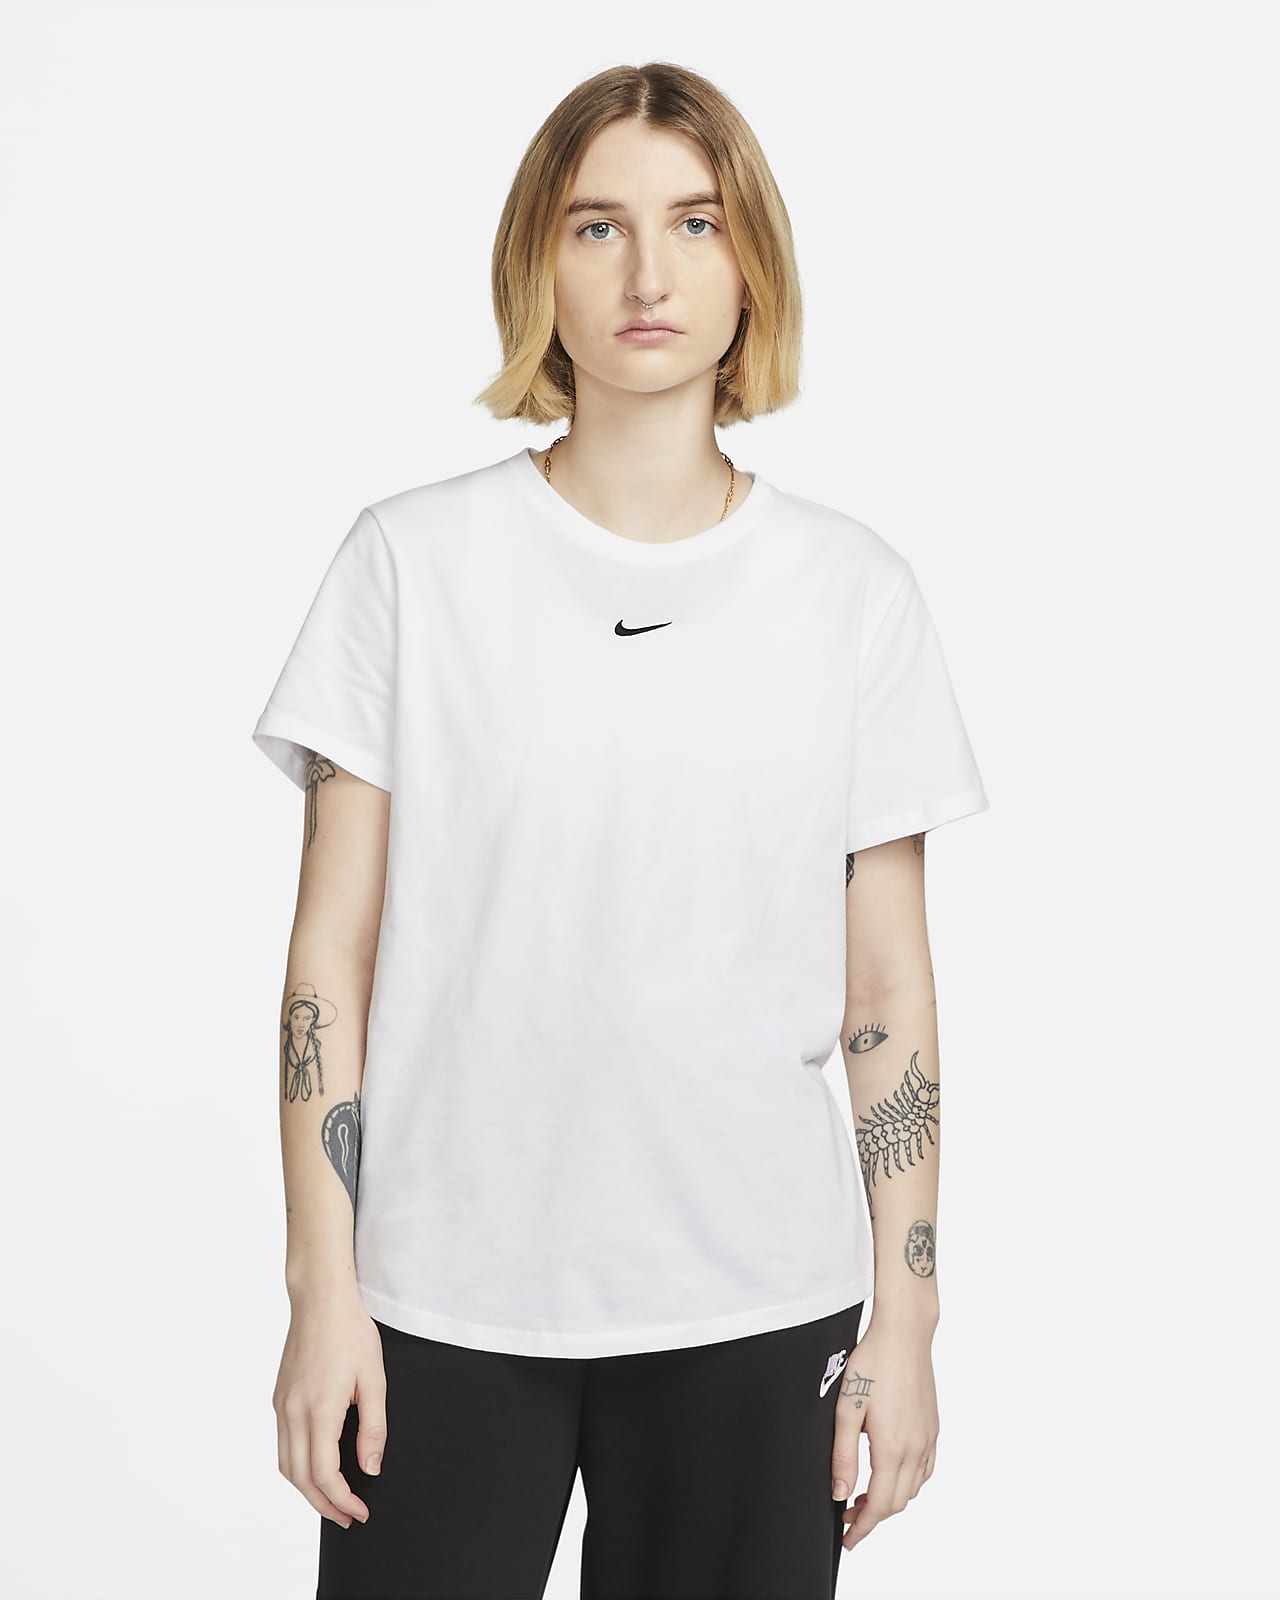 Knooppunt twee synoniemenlijst Nike Sportswear Essential T-shirt voor dames. Nike NL